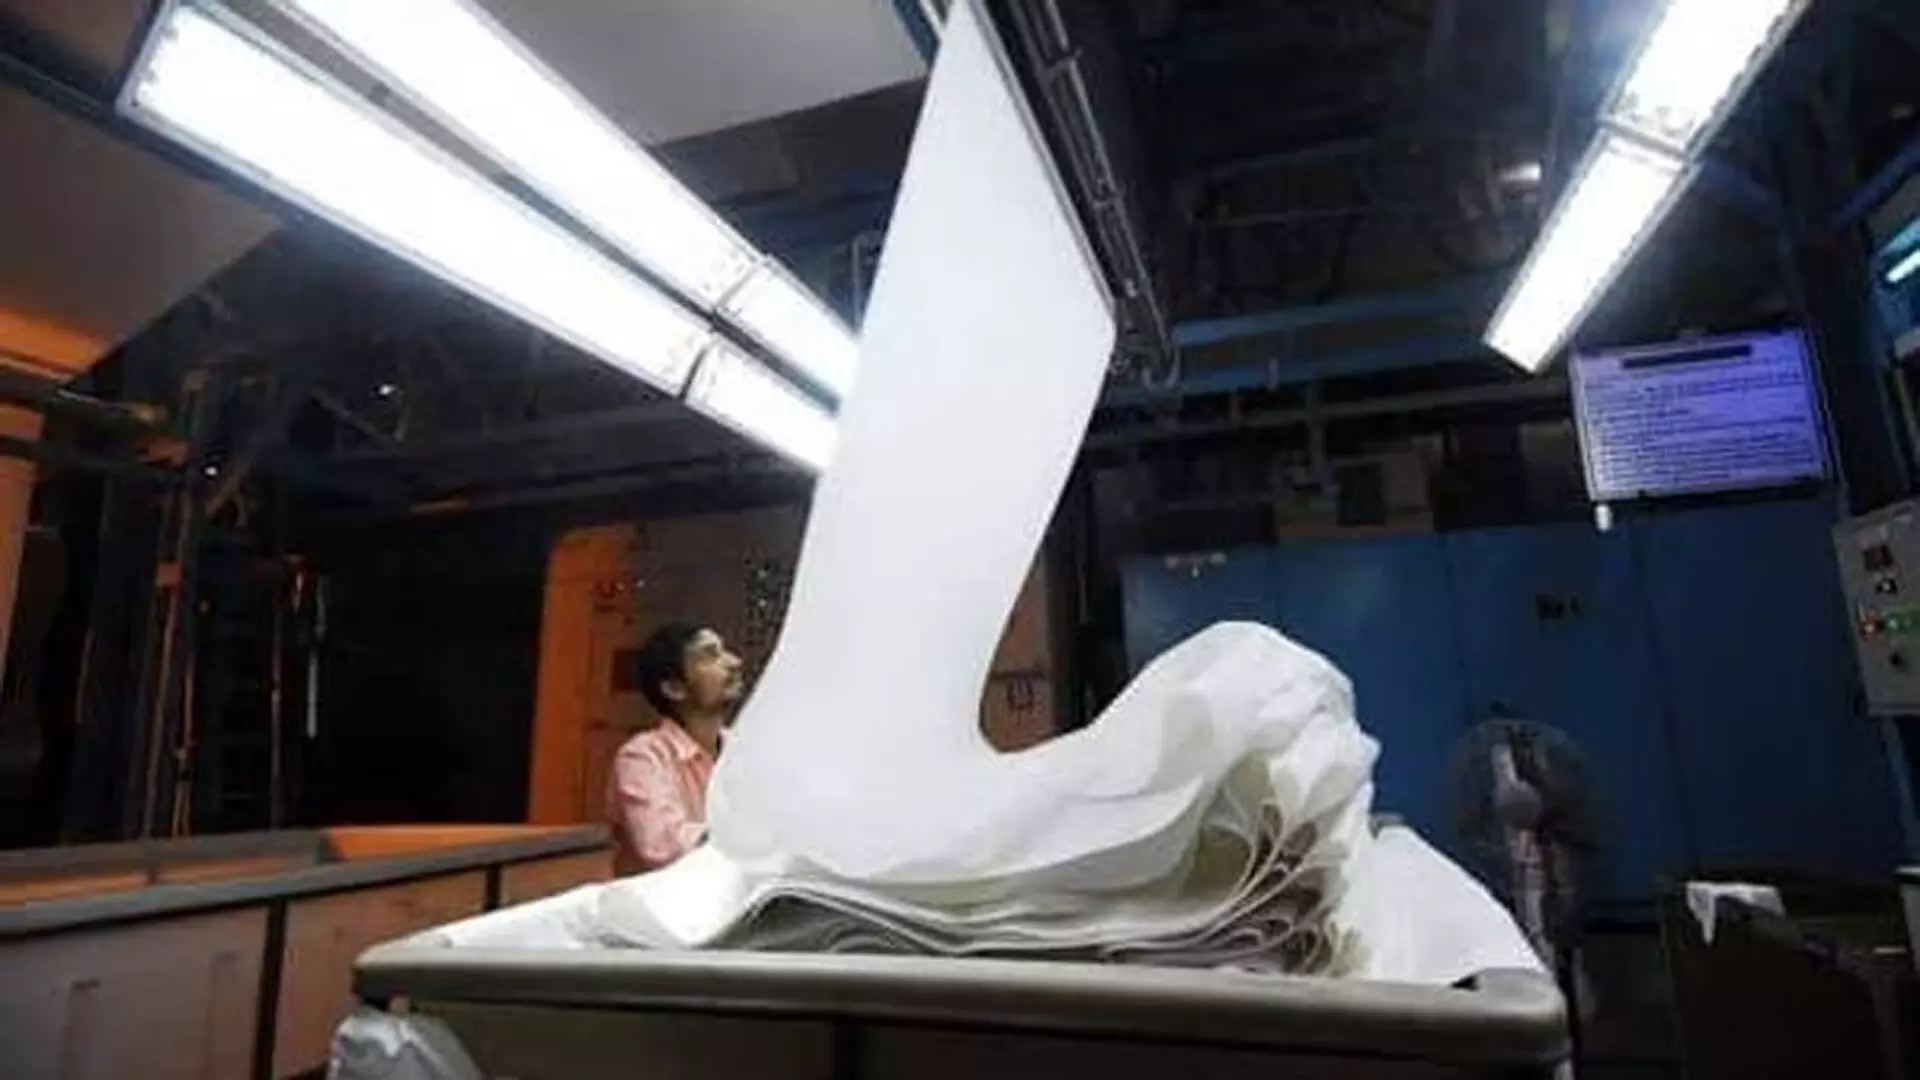 भारत कपड़ा क्षेत्र को बढ़ावा देने के लिए नए गुणवत्ता नियंत्रण आदेशों की बना रहा योजना